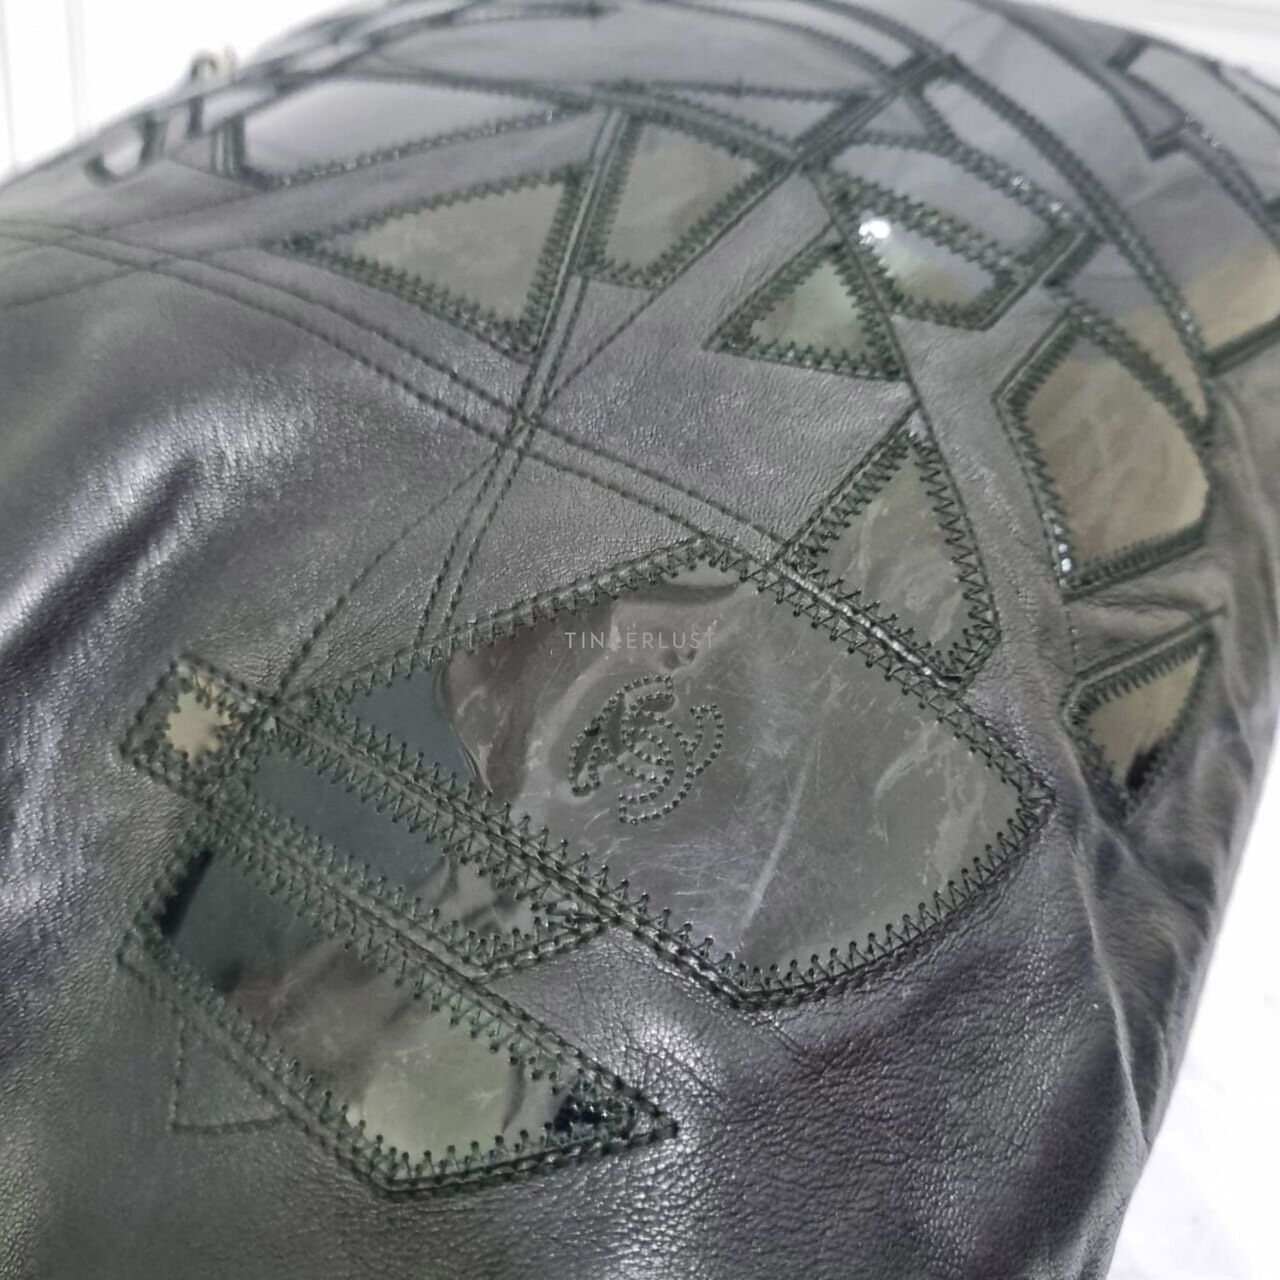 Chanel Chain Lambskin Colinkoque Black SHW #12 Tote Bag